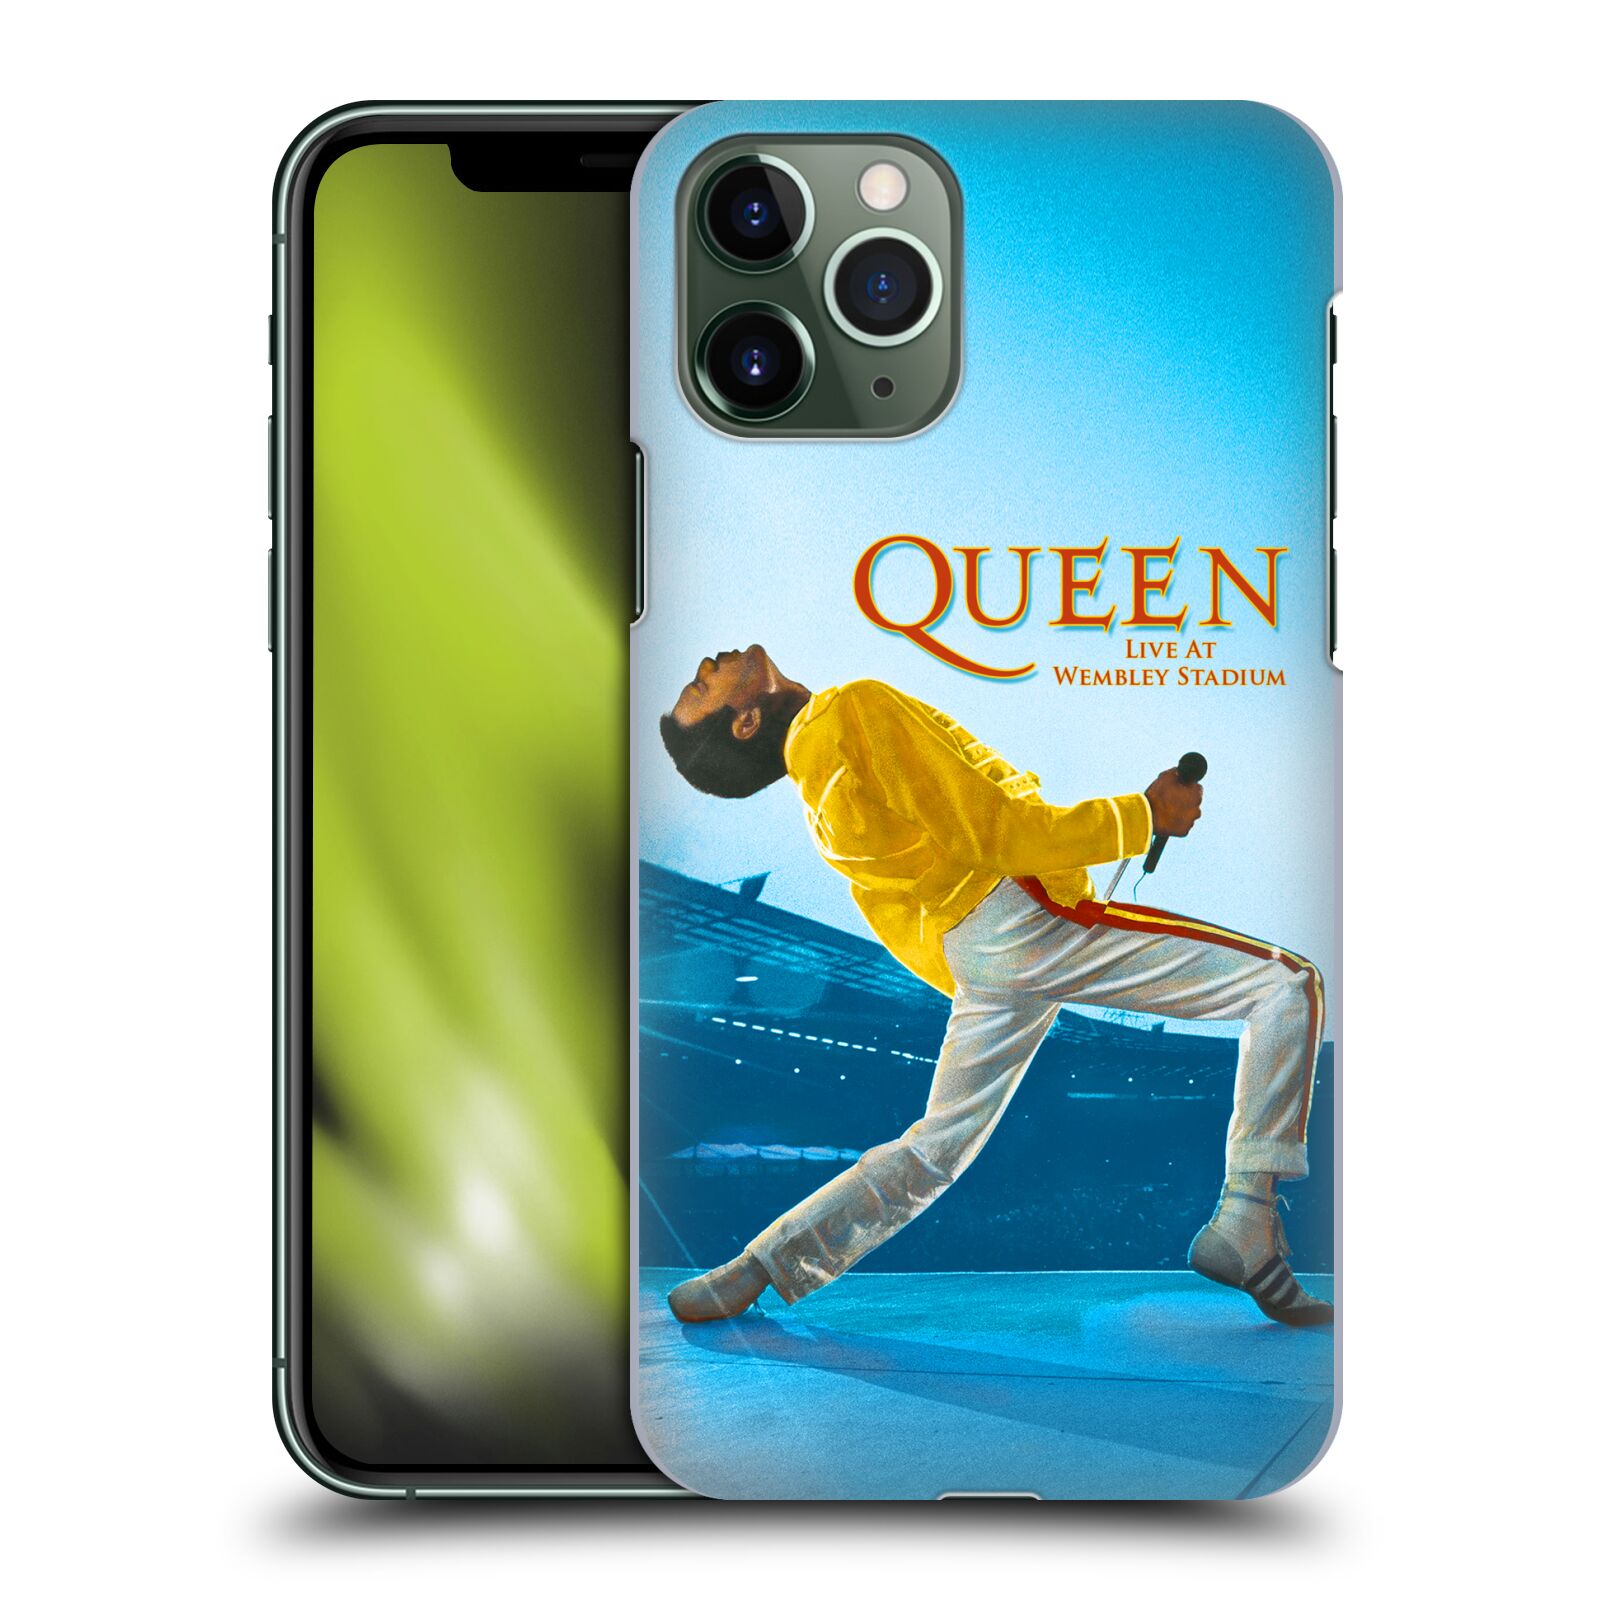 Pouzdro na mobil Apple Iphone 11 PRO - HEAD CASE - zpěvák Queen skupina Freddie Mercury